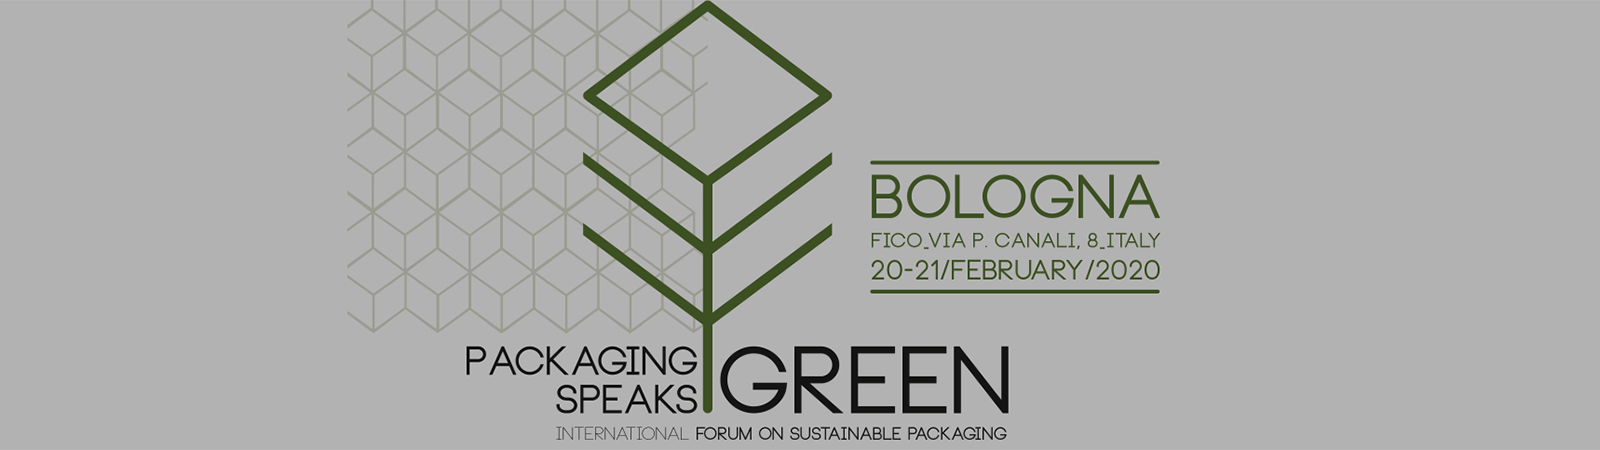 萨克米成为2020年2月20 - 21日博洛尼亚“绿色包装”的主要赞助商